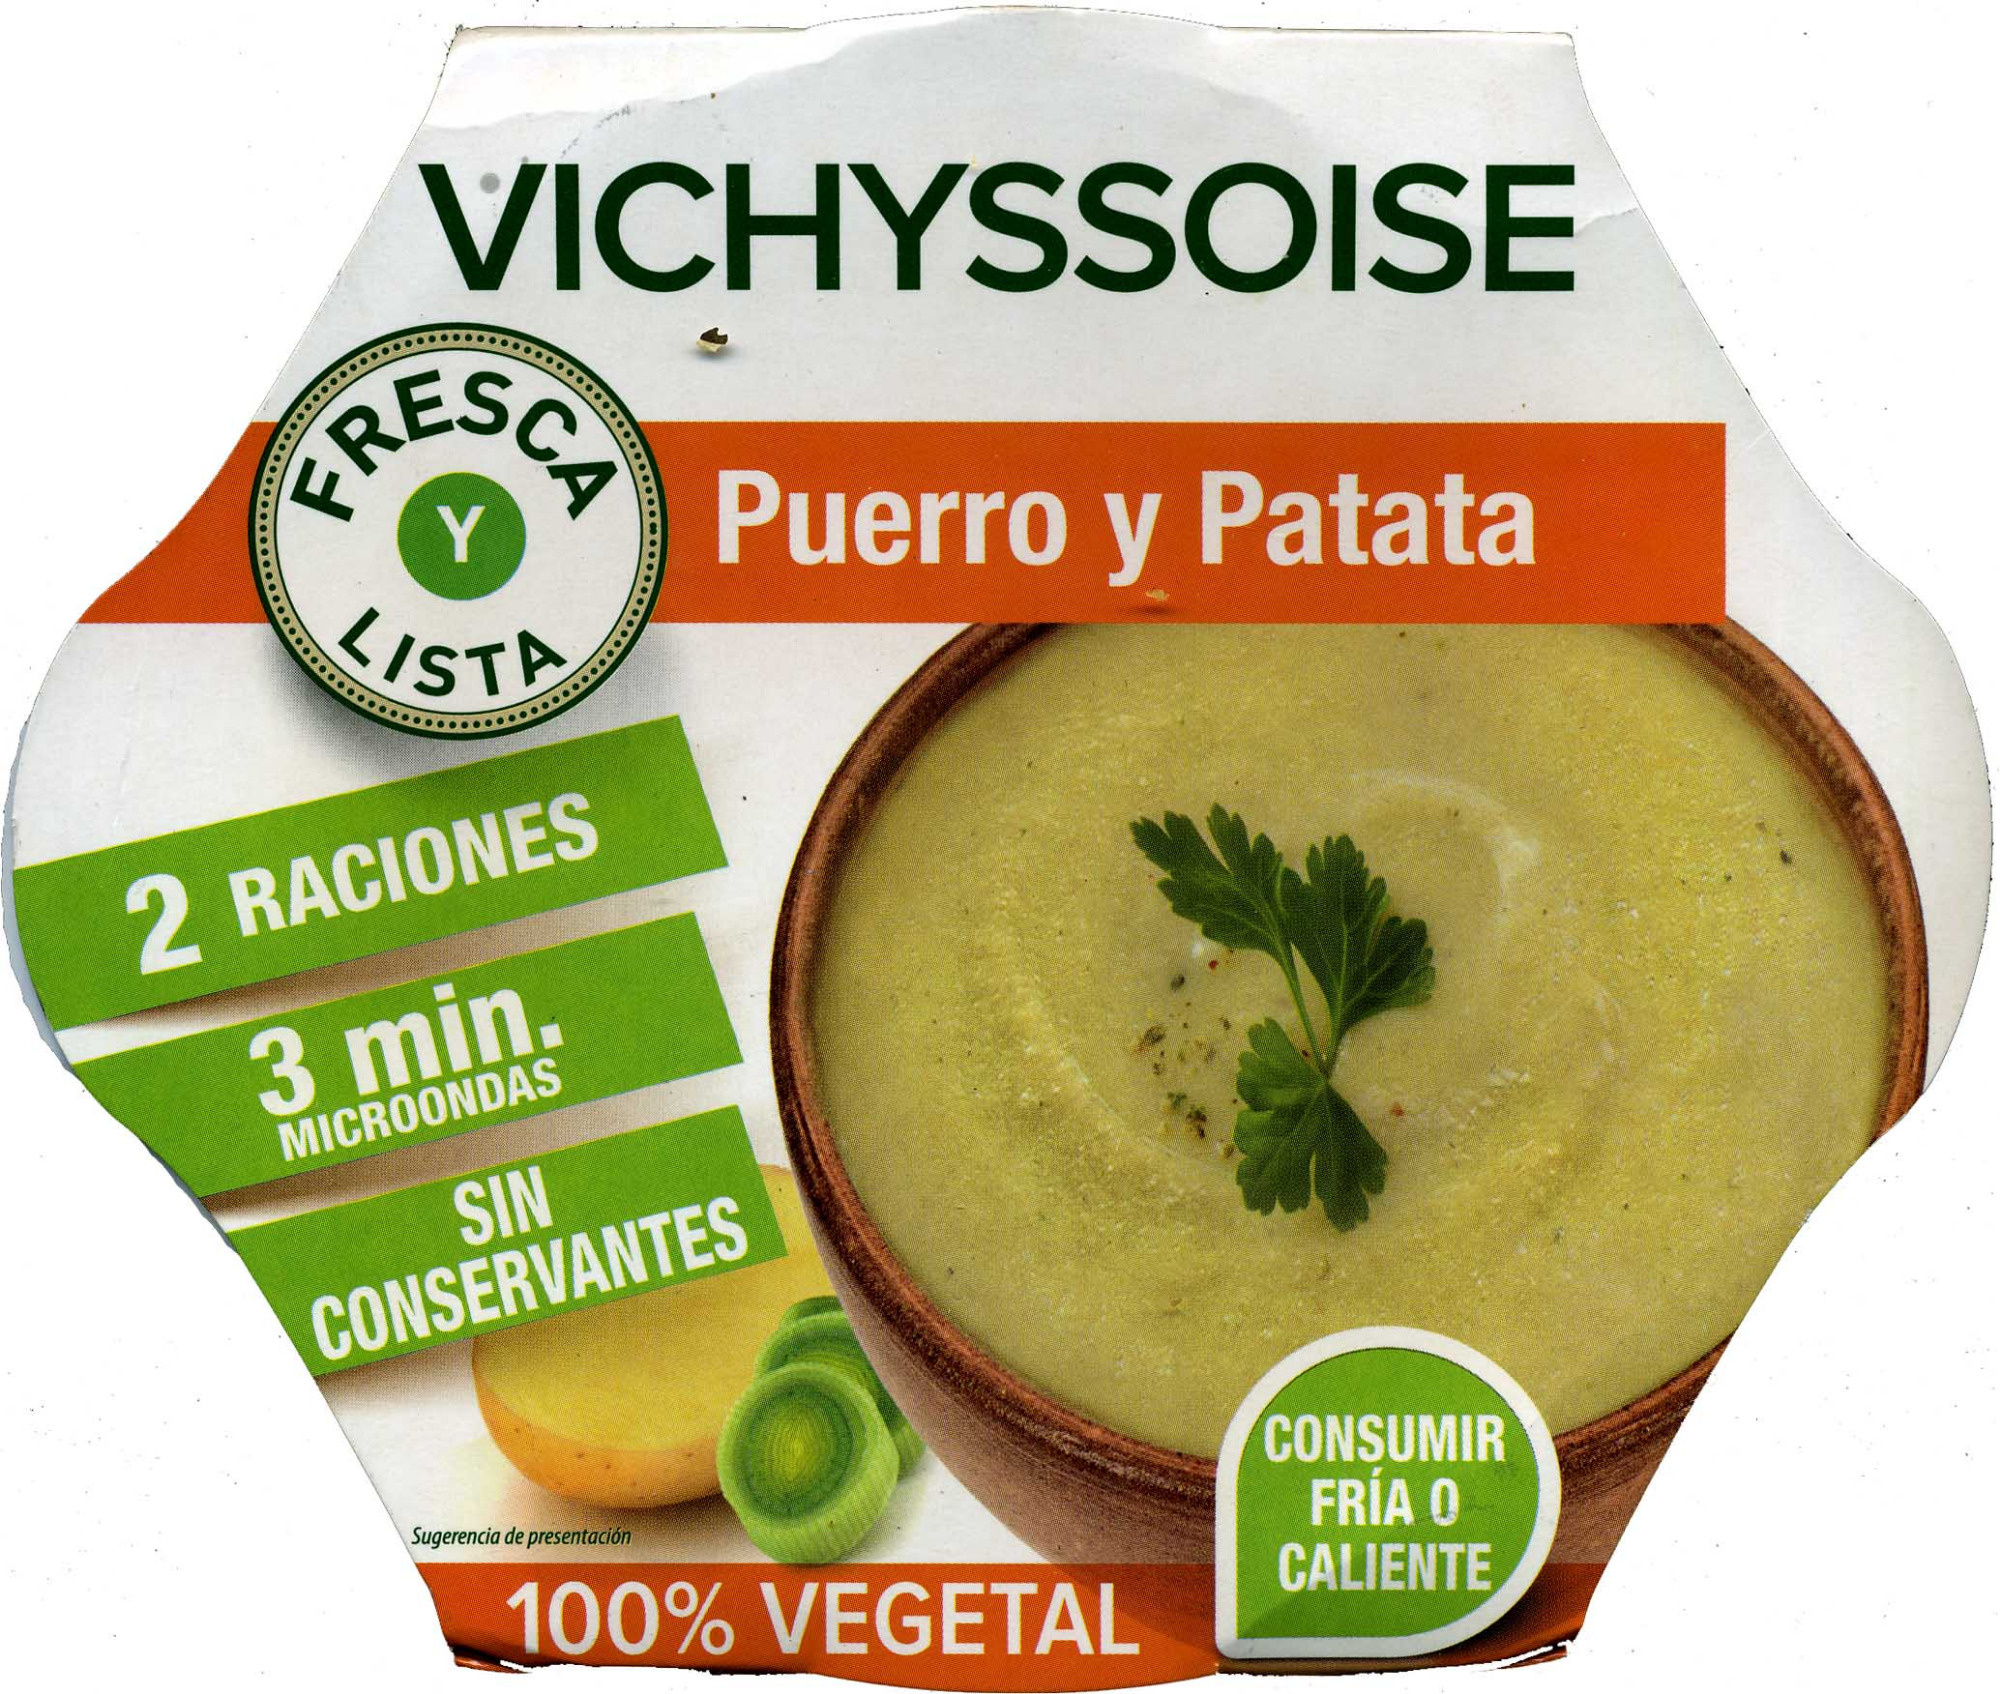 Vichyssoise Puerro y Patata - Producte - es